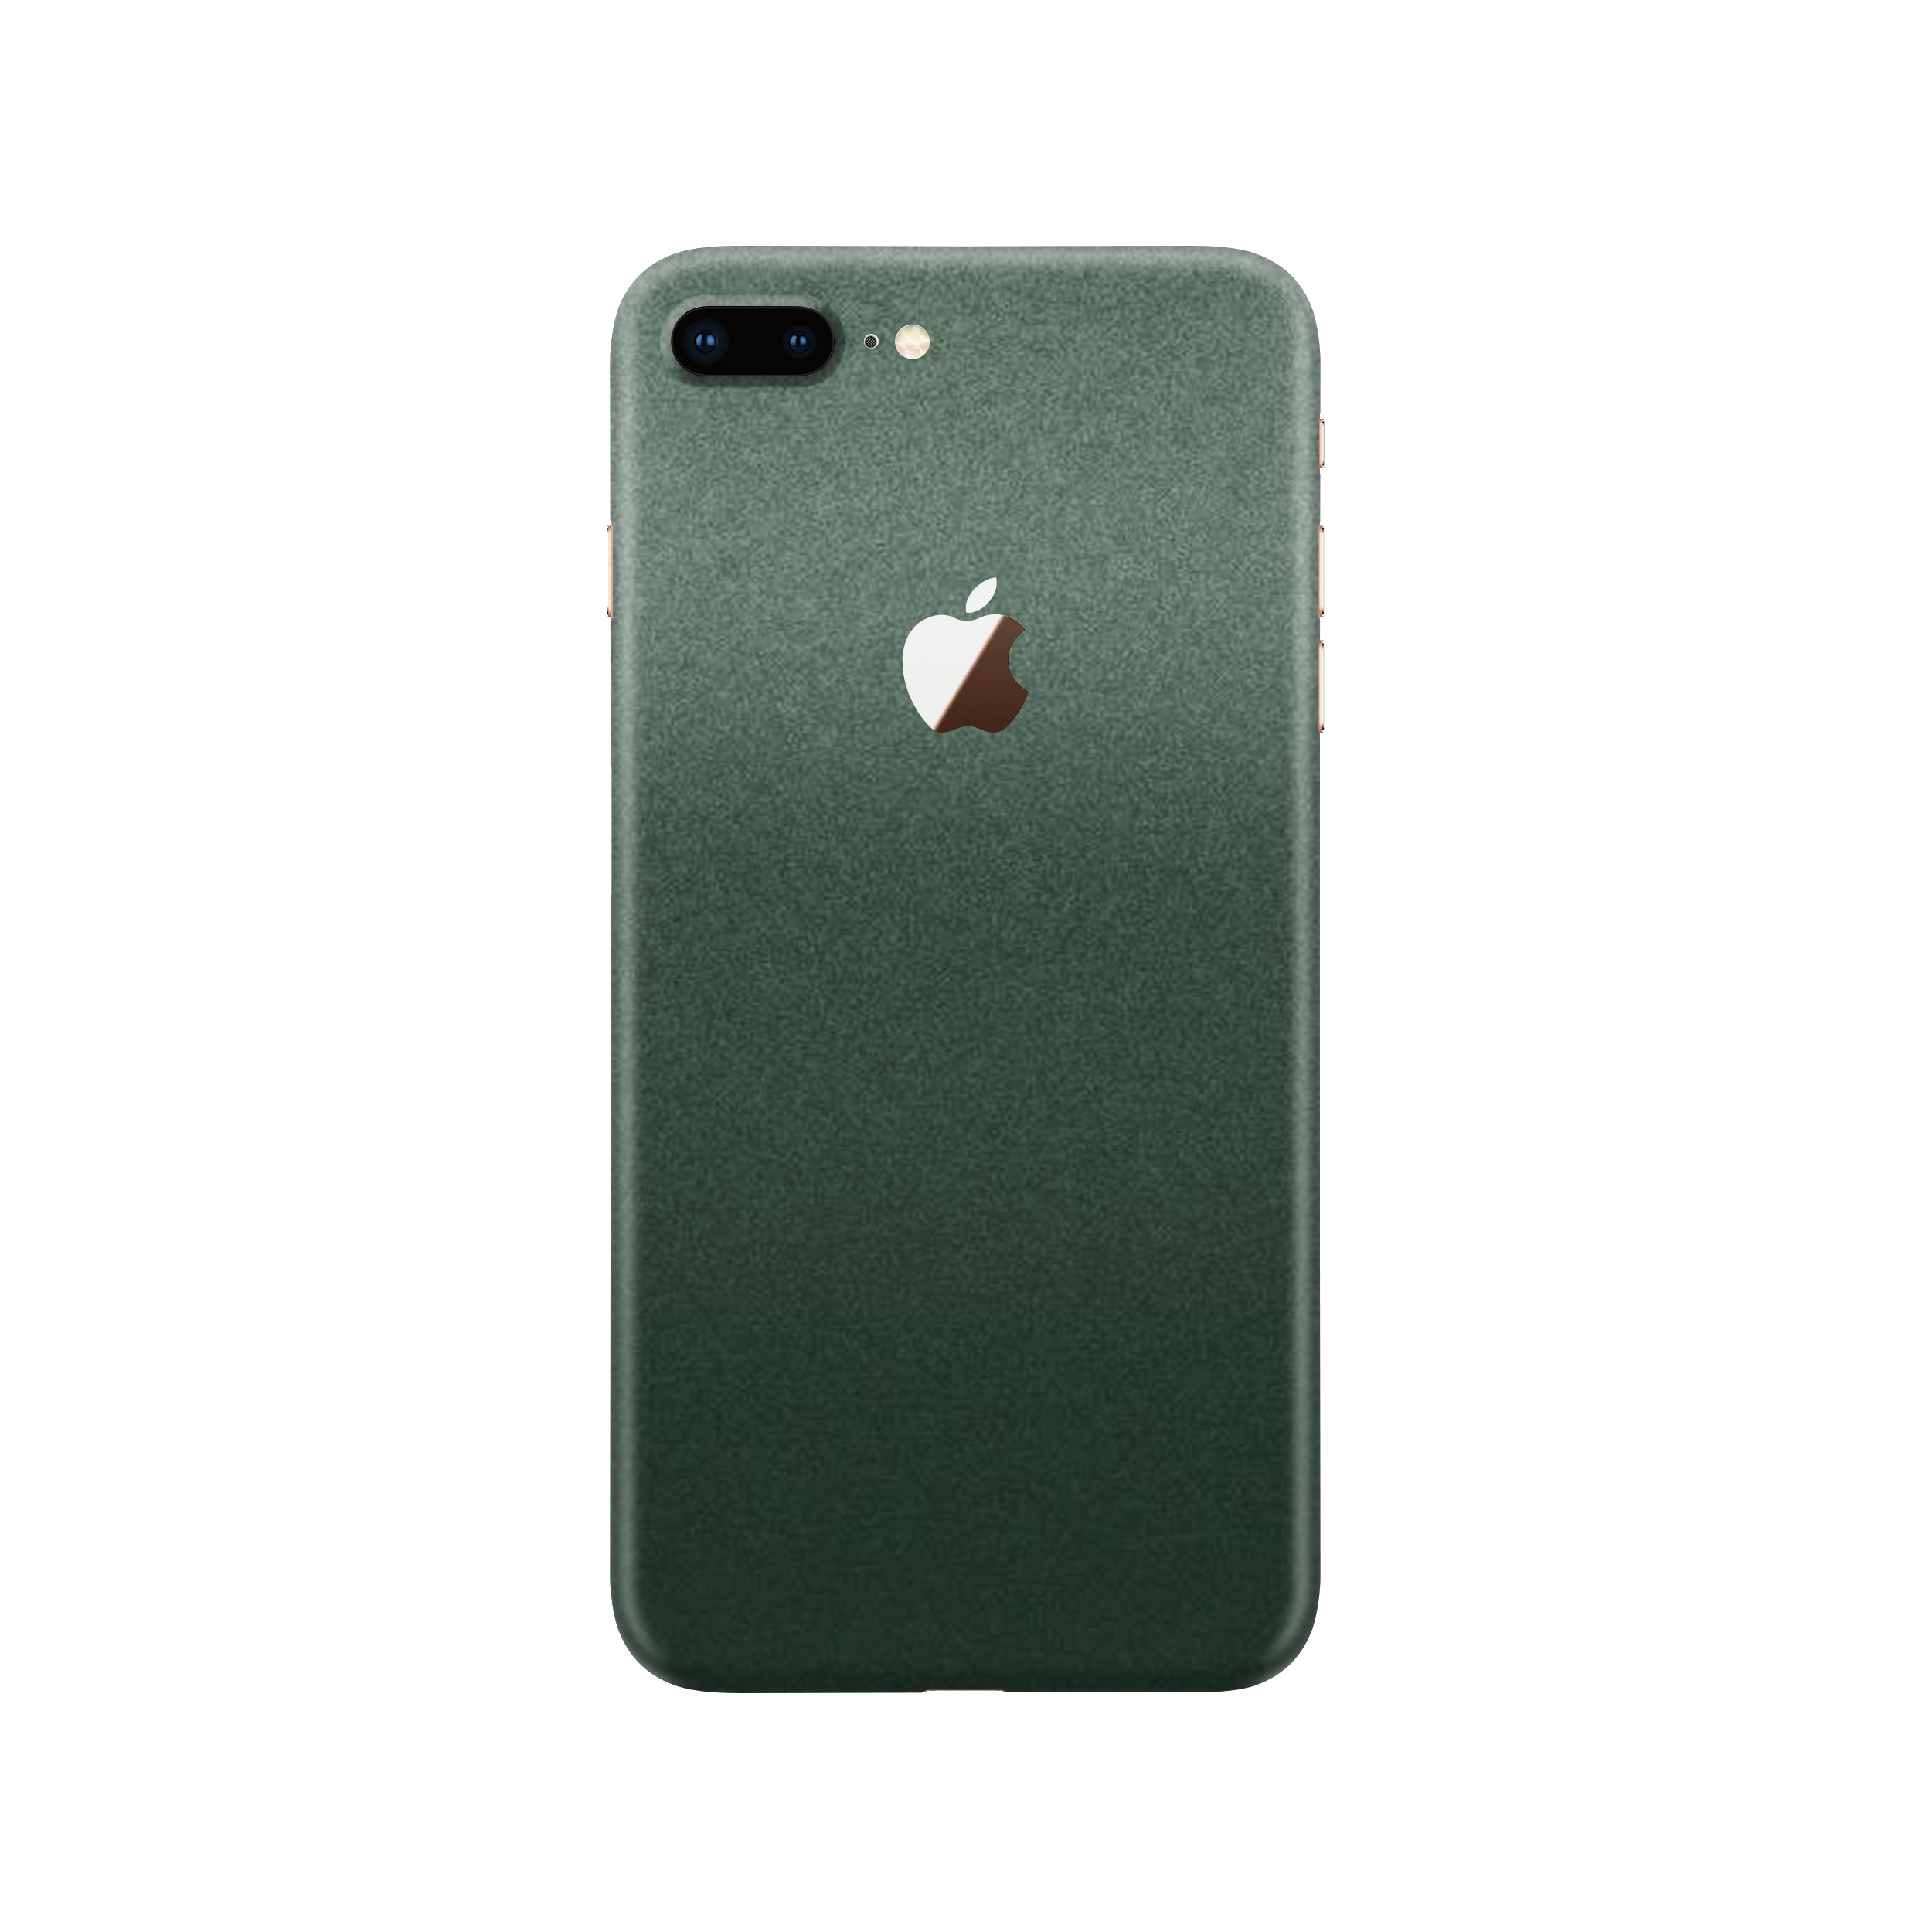 Pine Green Metallic Skin For iPhone 7 Plus